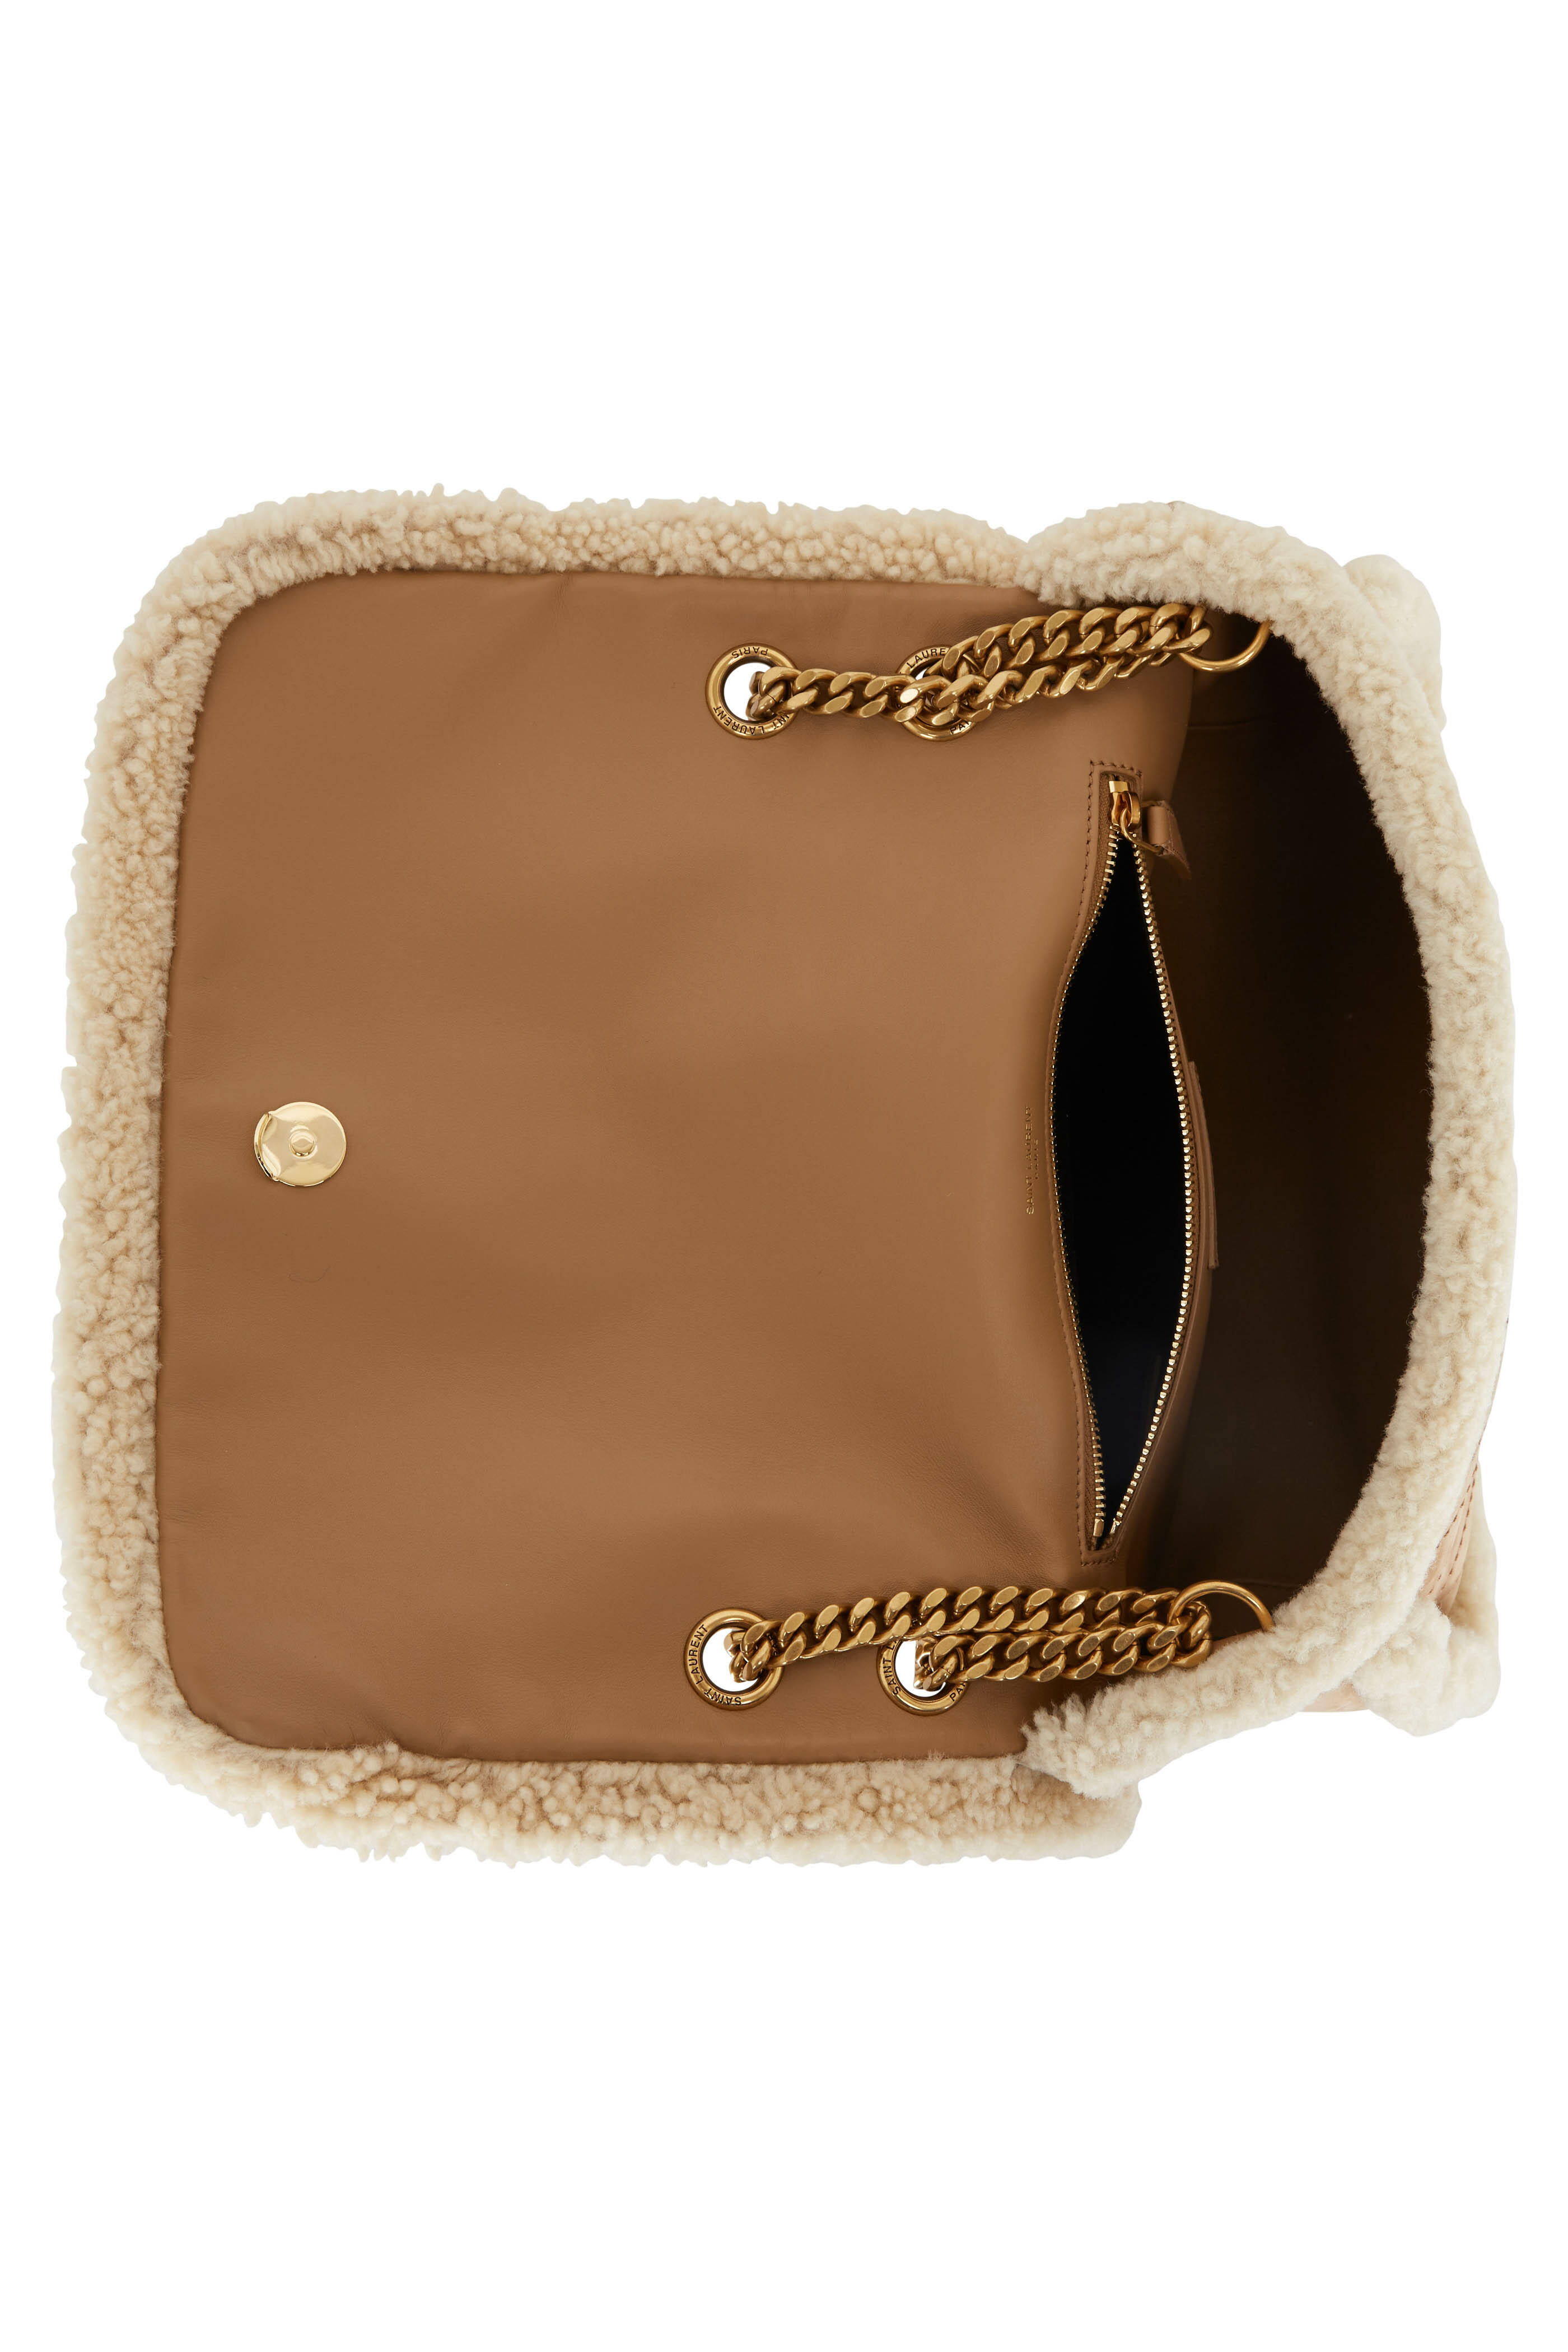 SAINT LAURENT Niki Medium Leather-Trimmed Raffia Shoulder Bag in